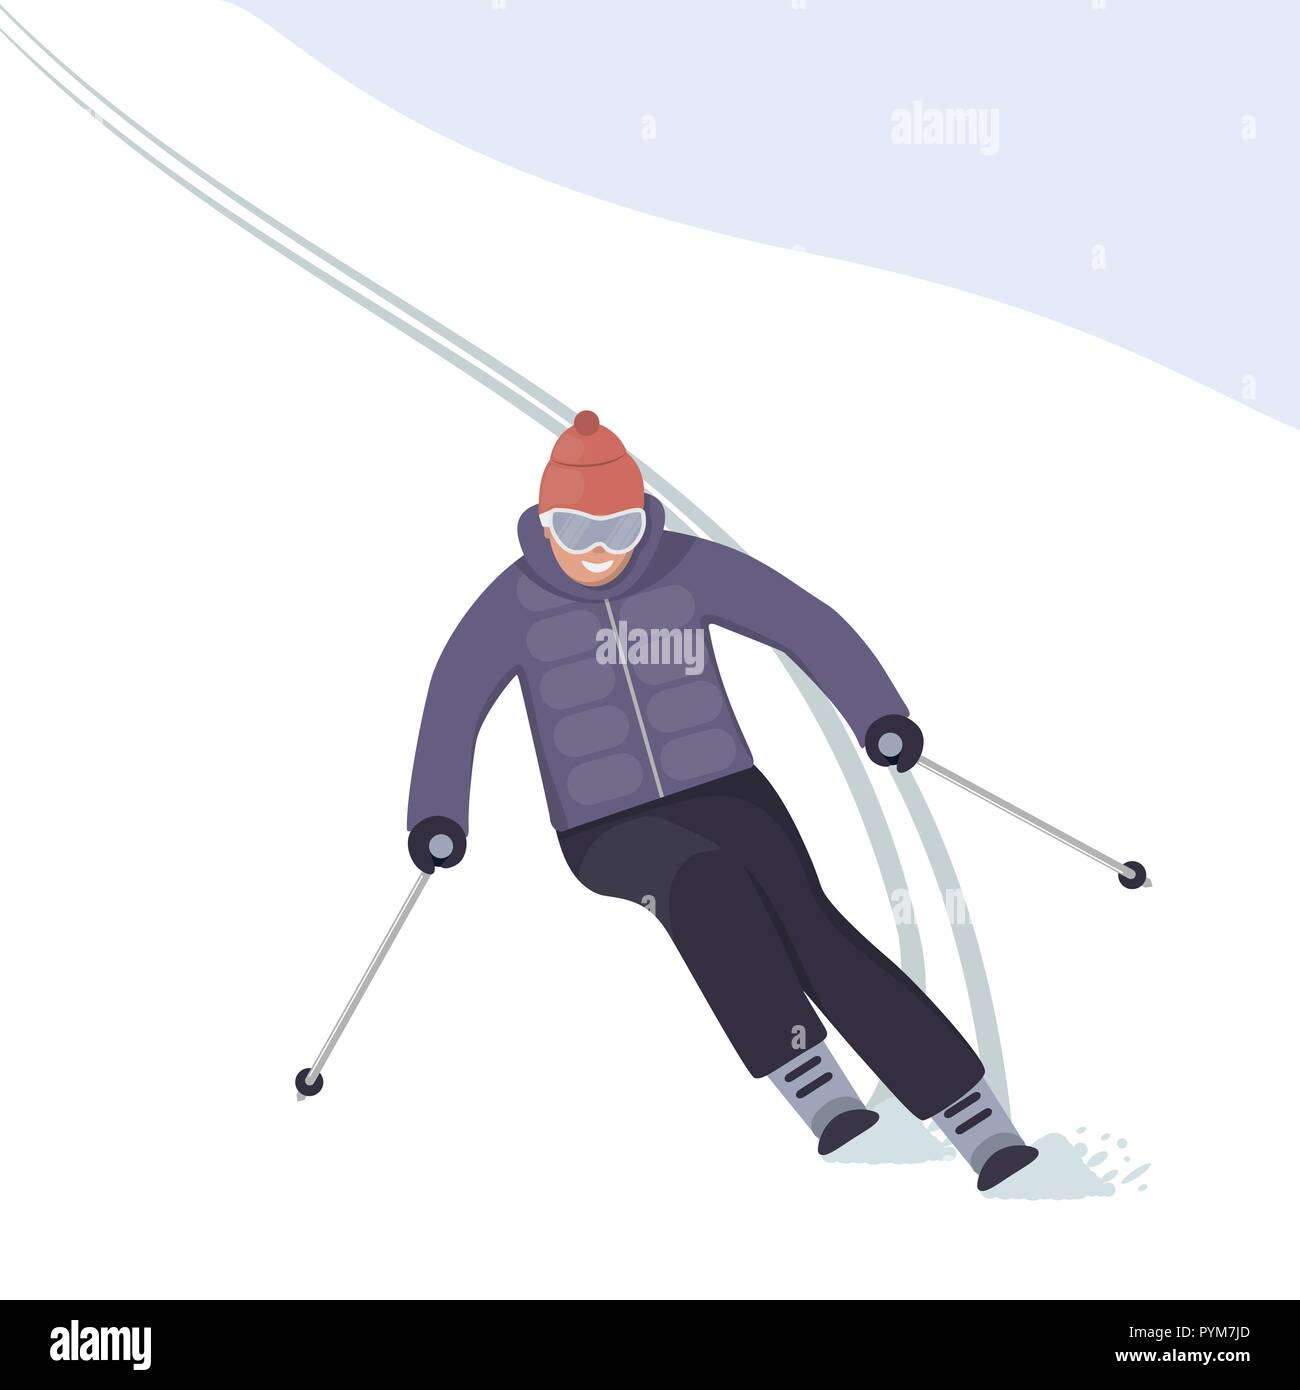 Le skieur s'engouffre dans la pente avec un sourire sur son visage. Vacances d'hiver dans les montagnes. Le ski alpin. Vector illustration style de télévision Illustration de Vecteur